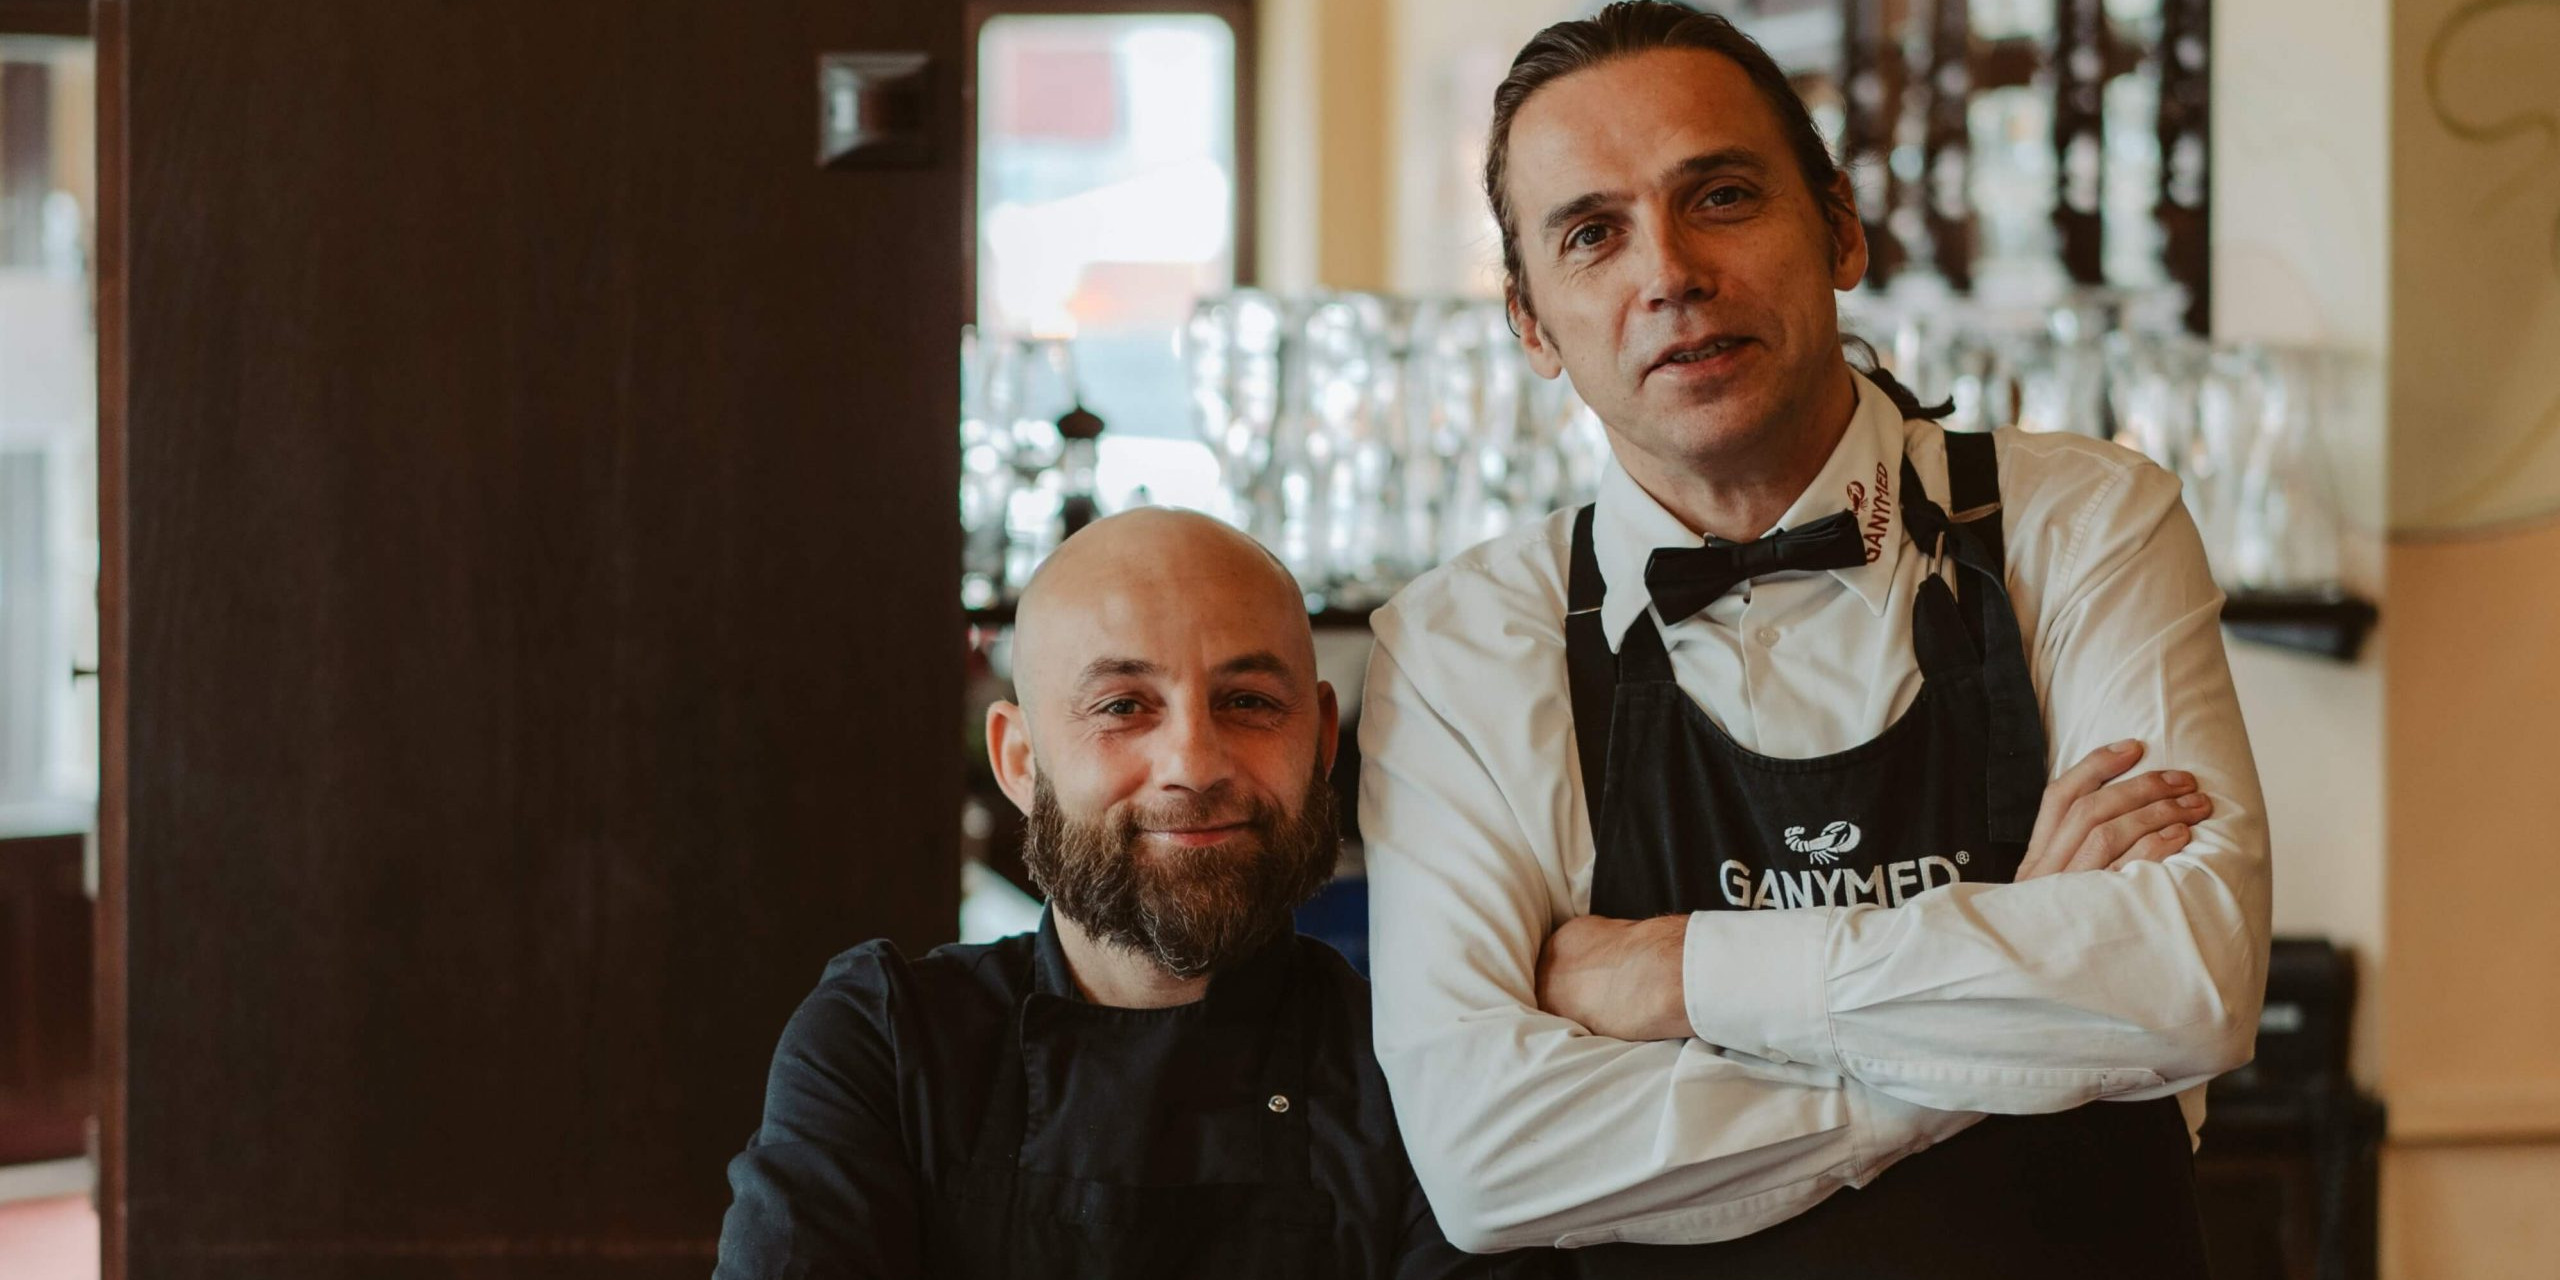 Zwei Mitarbeiter des Ganymed, links Küchenchef Pietro Solito, rechts Chefkellner André Stockhausen, fotografiert vor der Theke der Ganymed Brasserie.